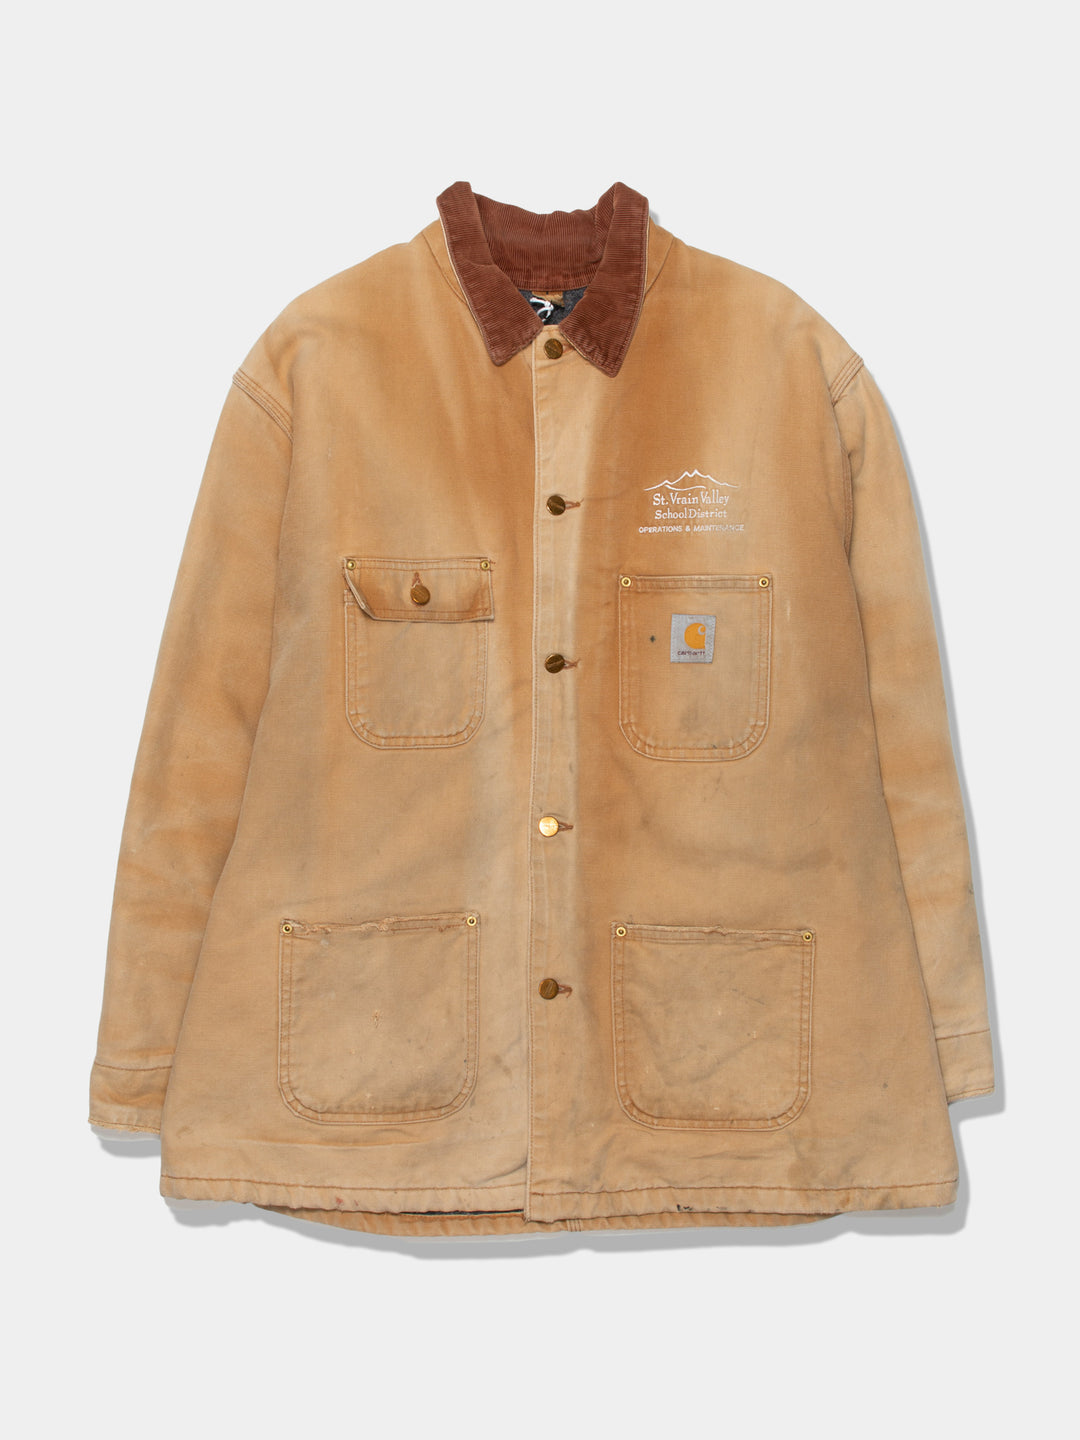 Vintage Carhartt Chore Jacket (XL)